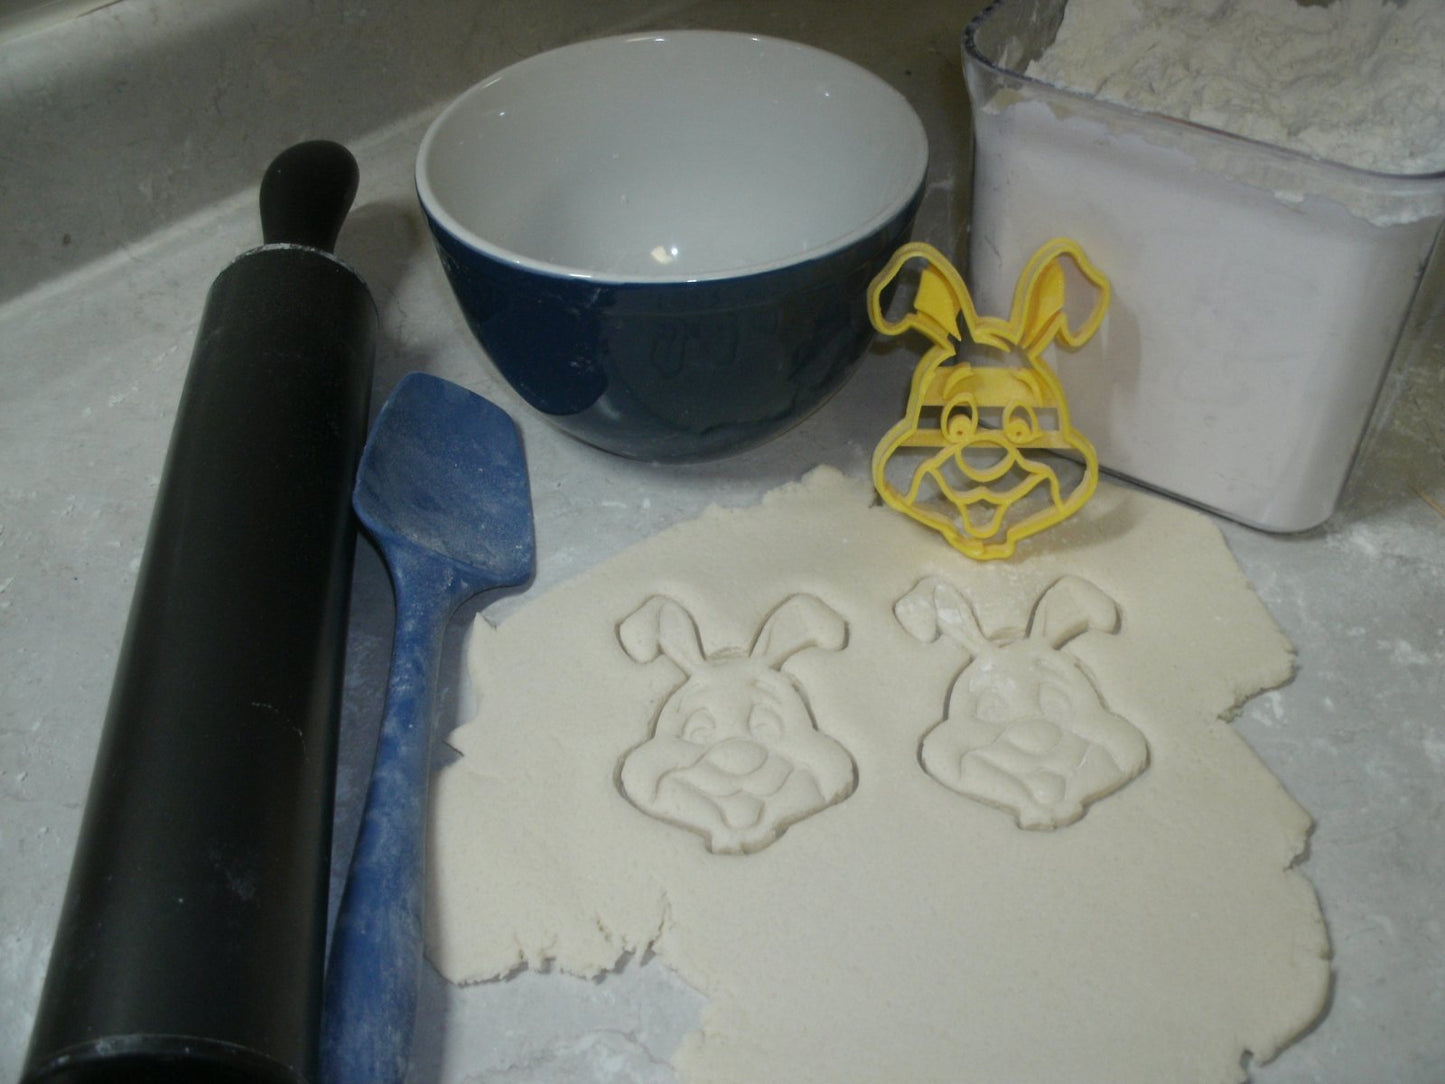 Rabbit Winnie the Pooh Disney Cartoon Cookie Cutter Made in USA PR795